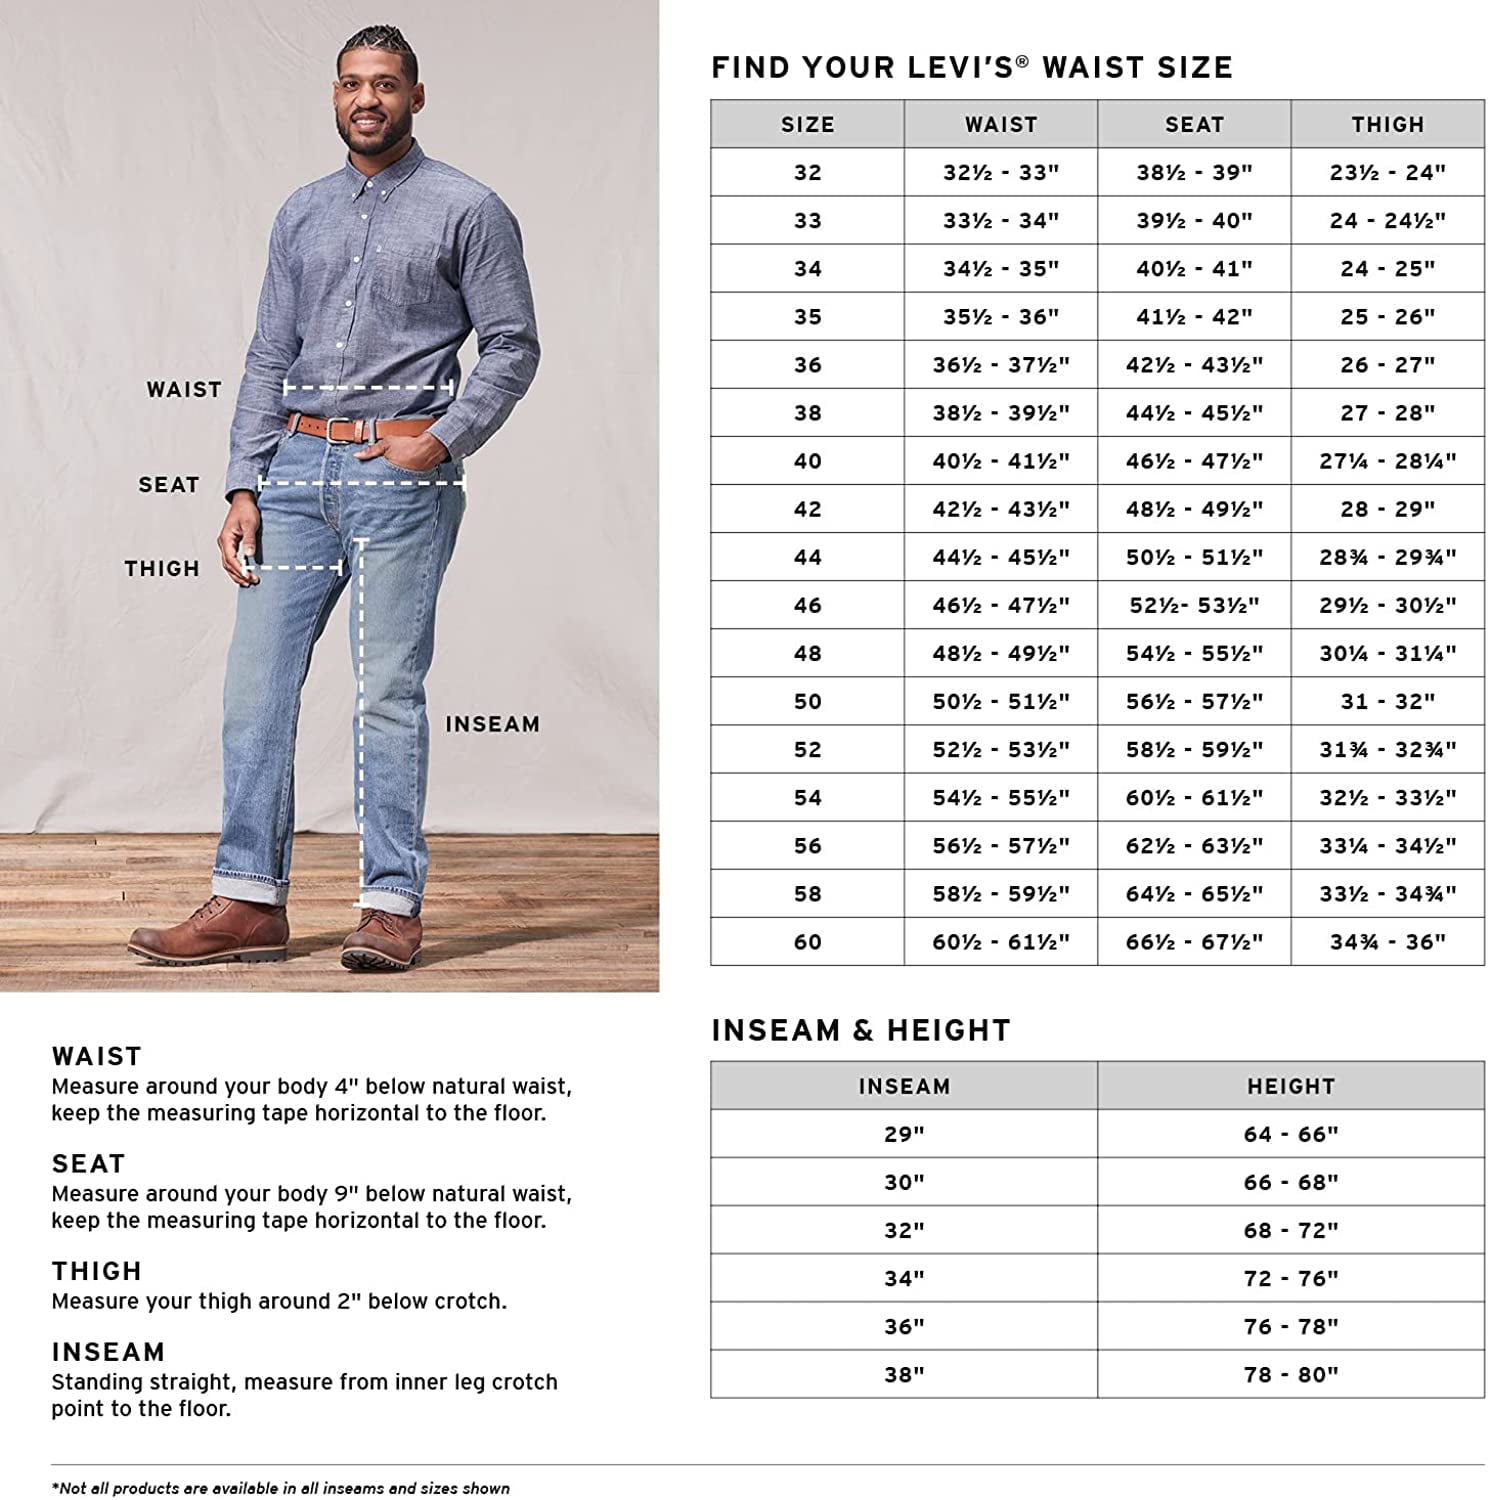 Levis Size Guide, Levis Jeans Size Guide, Levi Jeans Size Chart Conversion